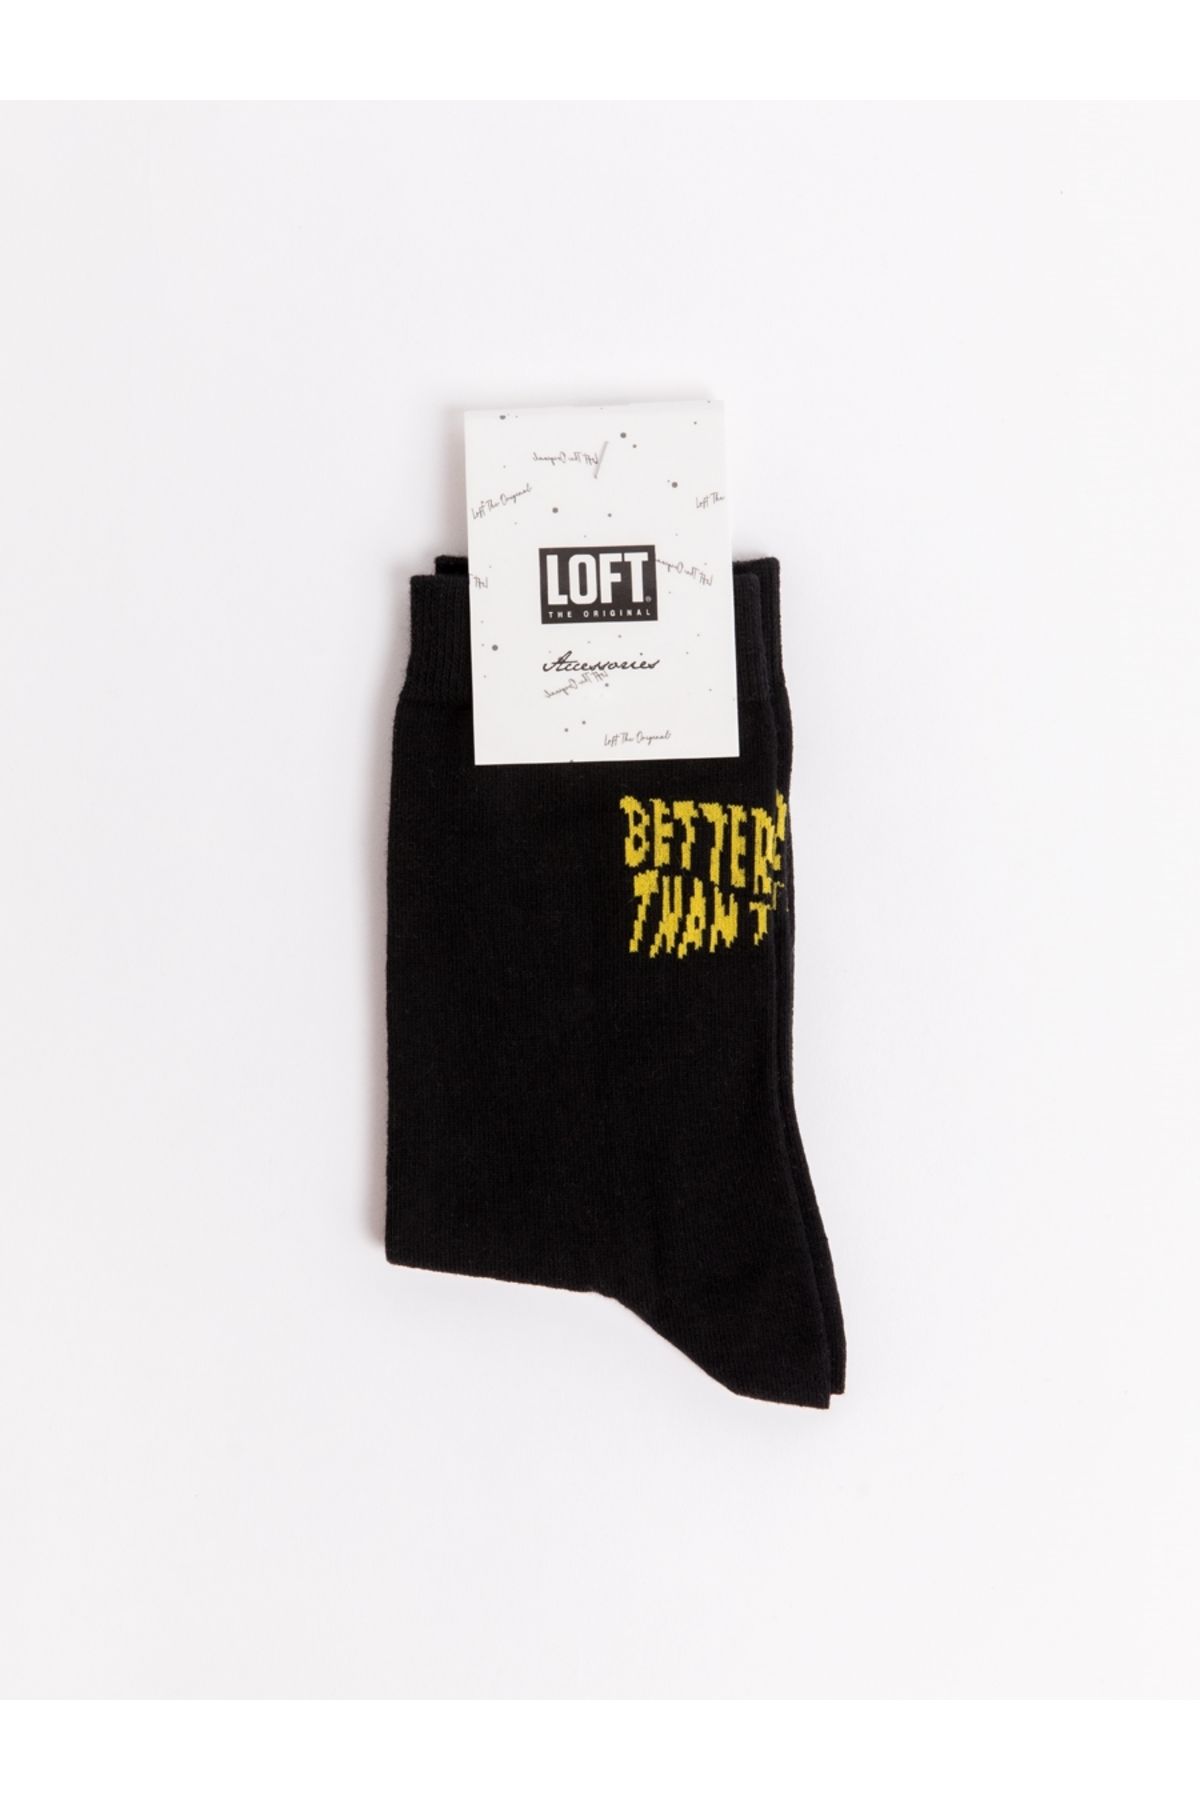 Loft Lf2034419 Kadın Çorap Black